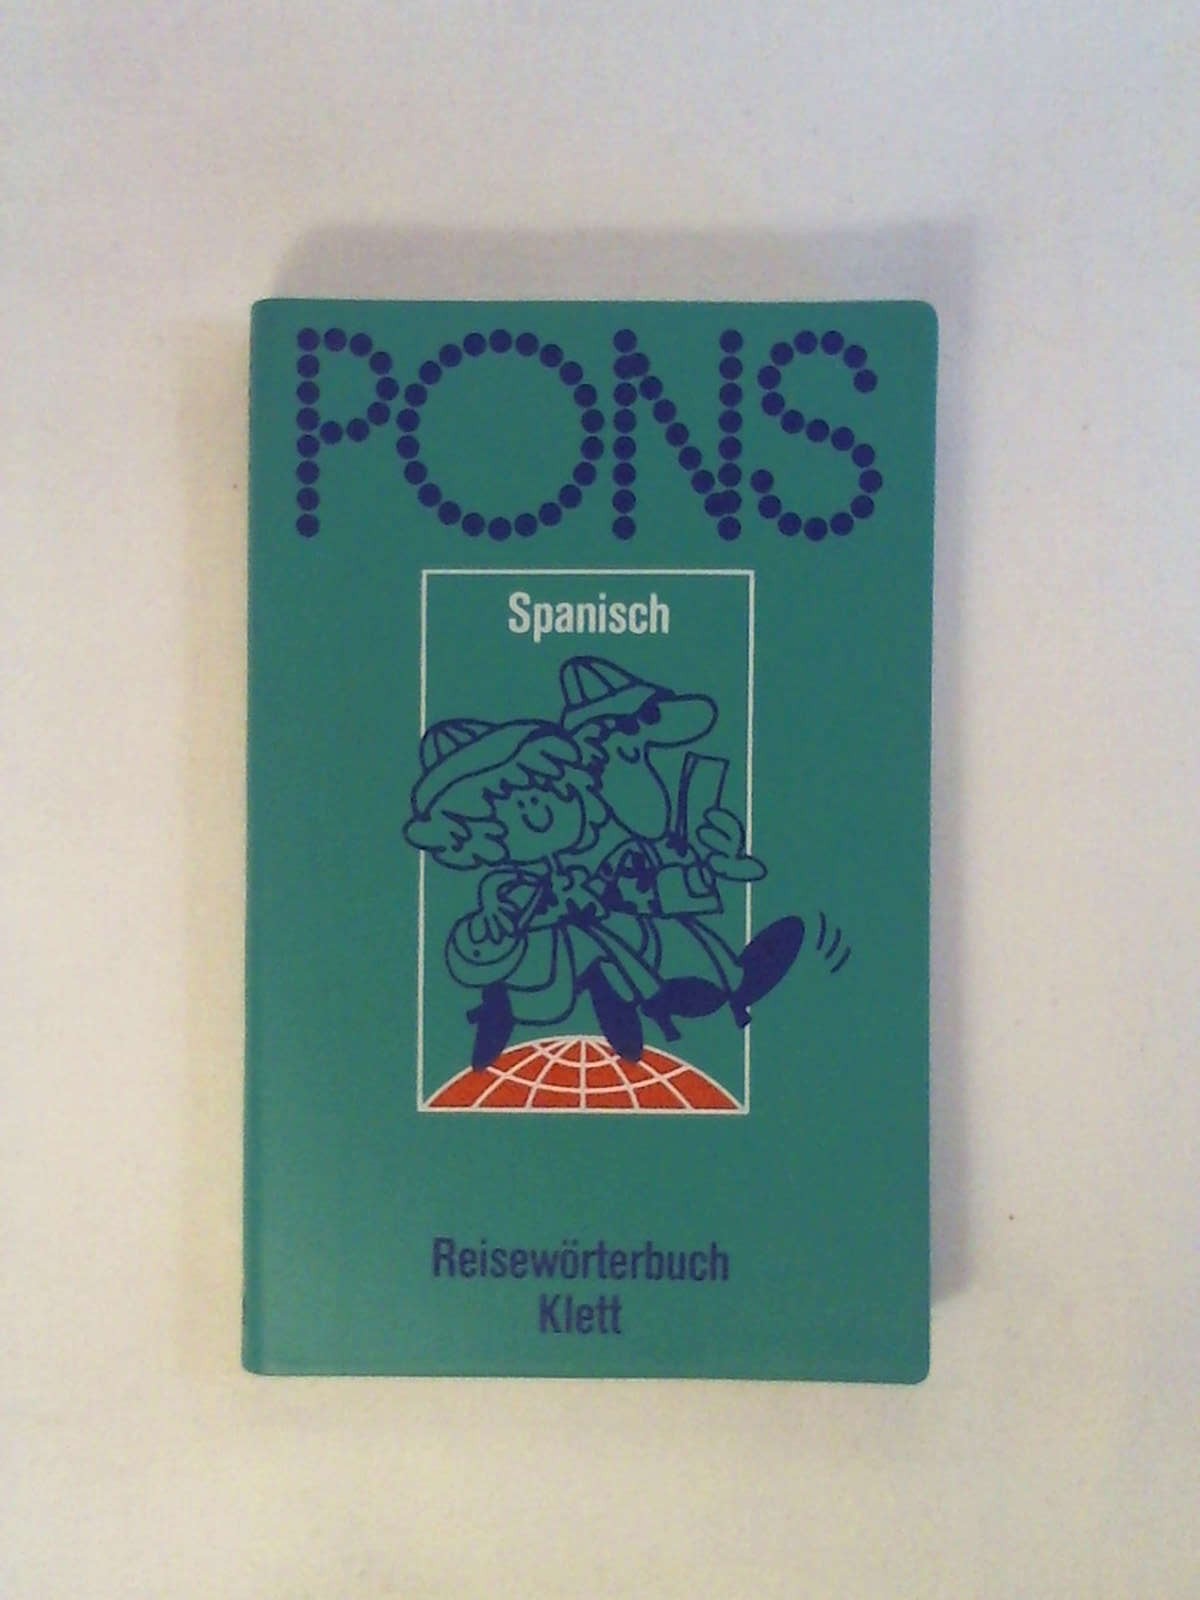 PONS Reisewörterbuch Spanisch / PONS Reisewörterbuch Spanisch